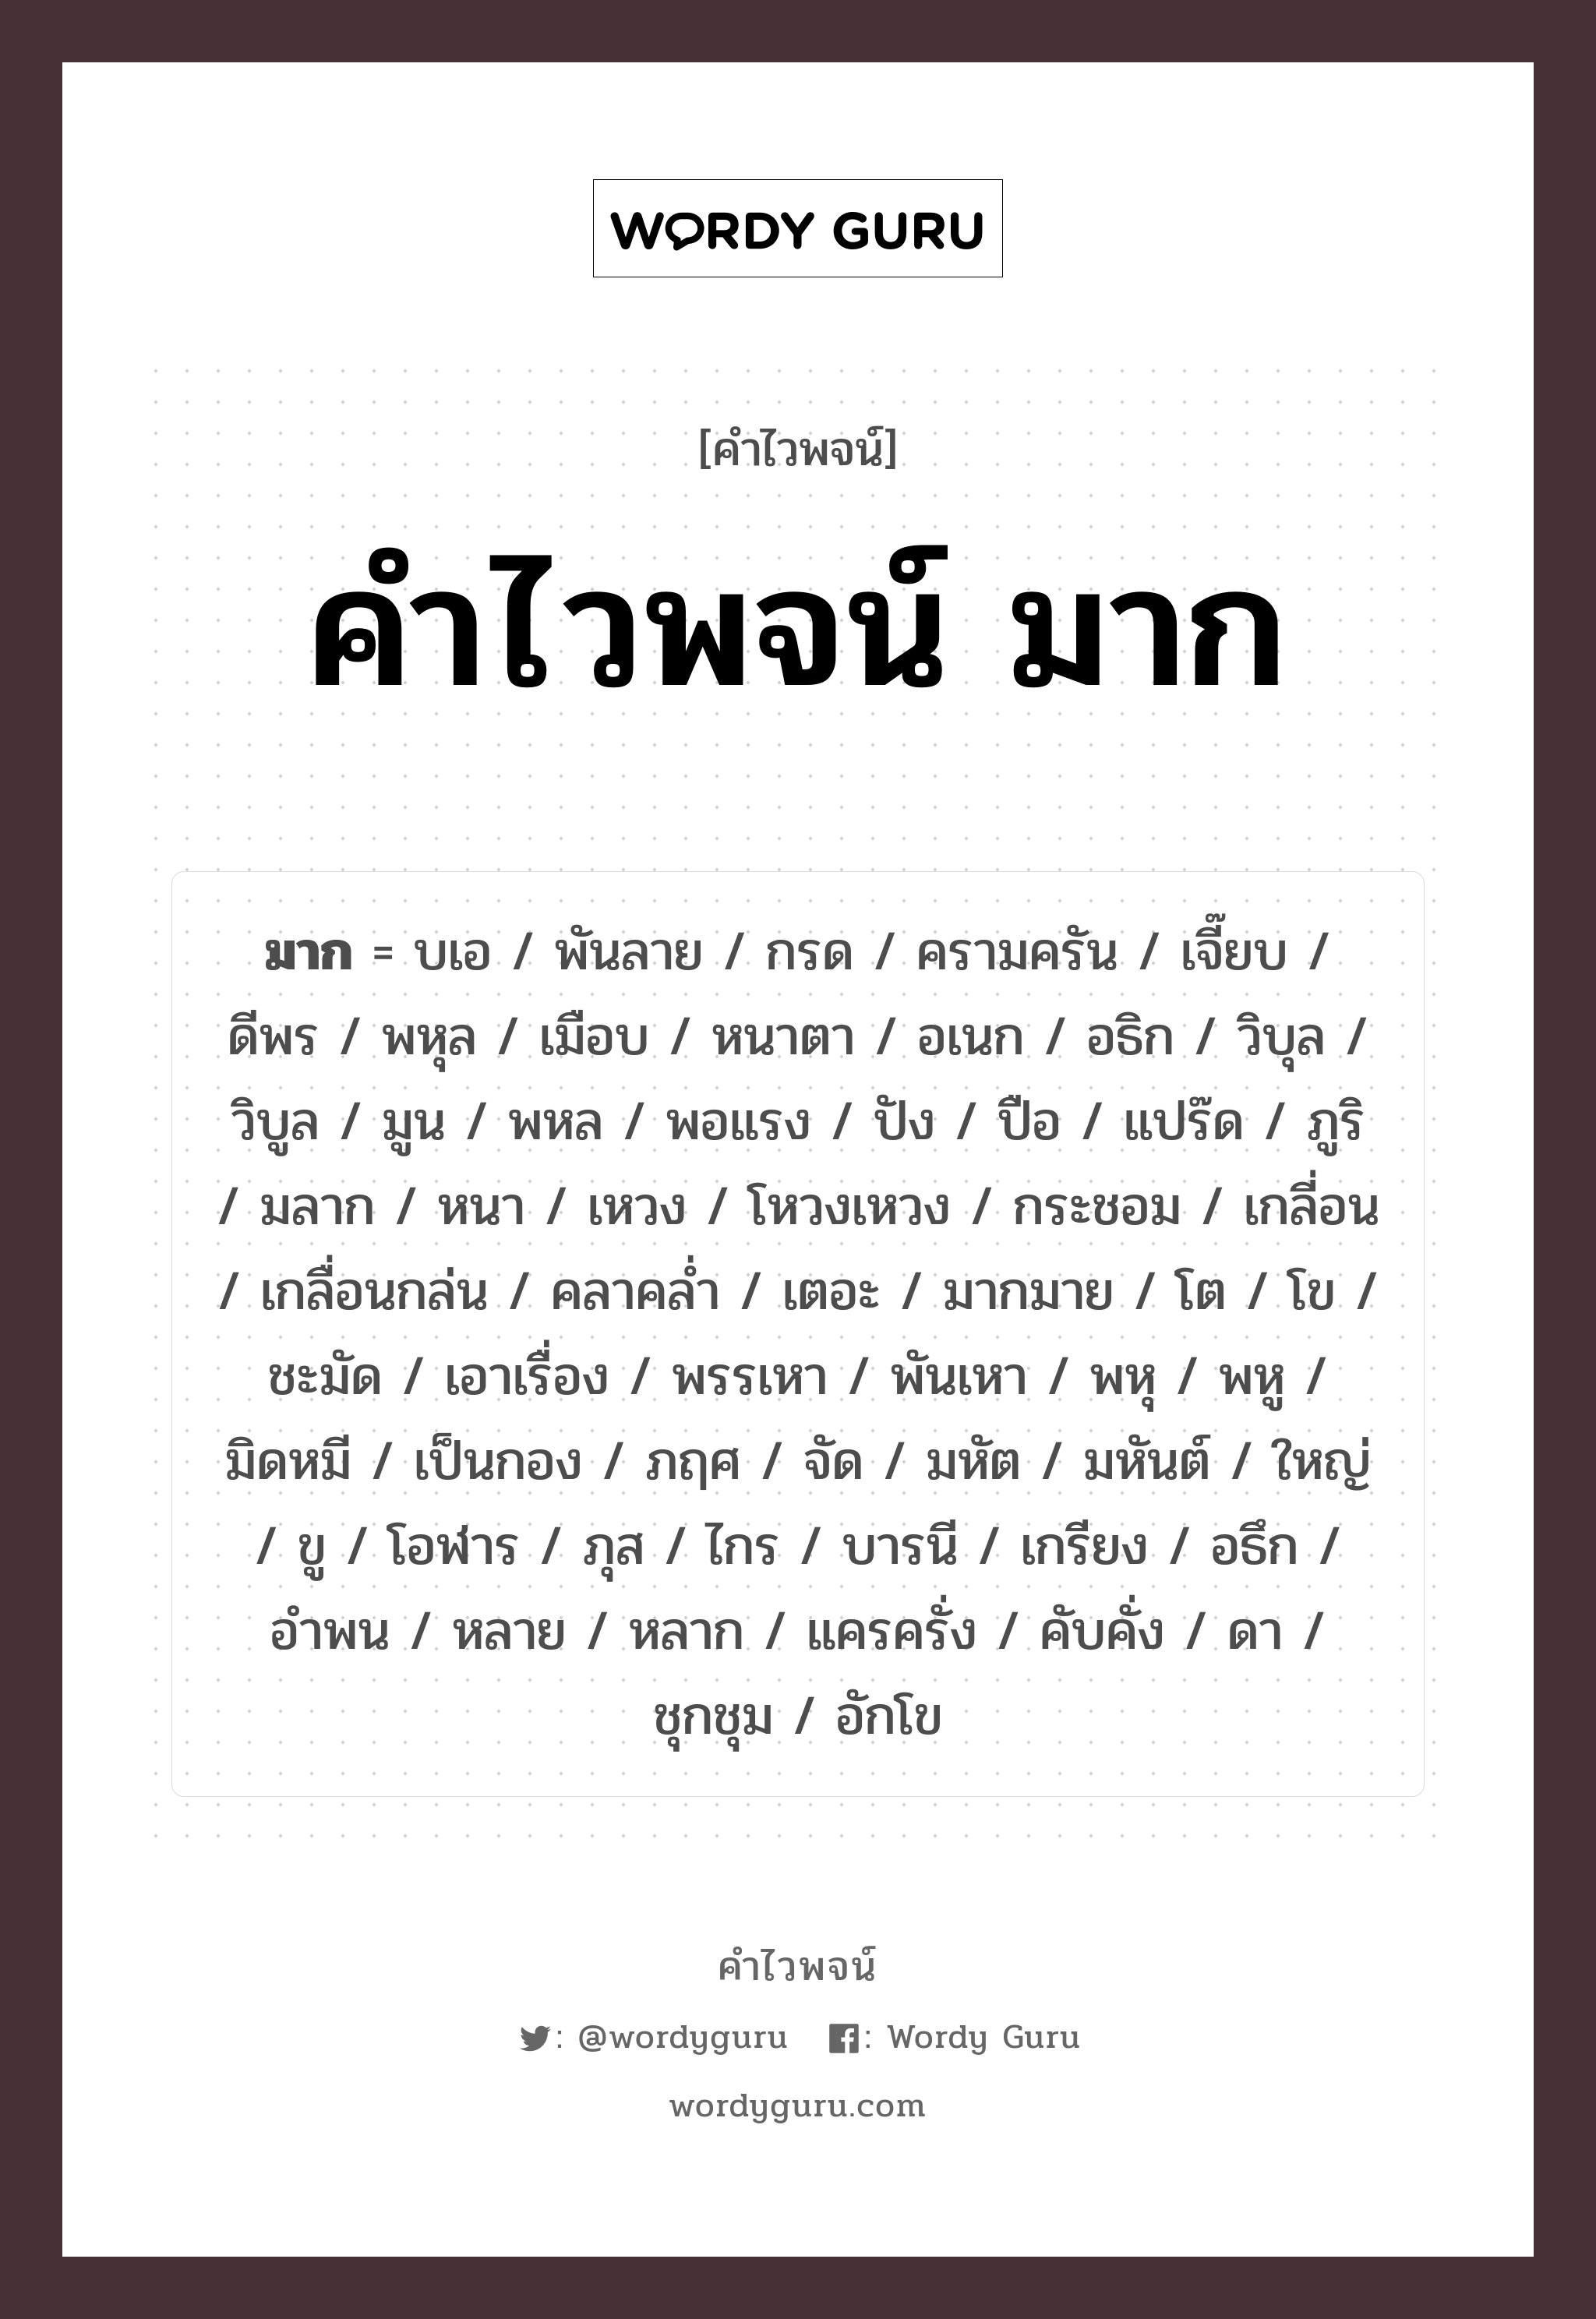 คำไวพจน์ มาก, คำในภาษาไทย มากมาย กลุ่มคำไวพจน์ คำไวพจน์กลุ่ม บอกปริมาณ/ขนาด หมวด คำไวพจน์ มาก